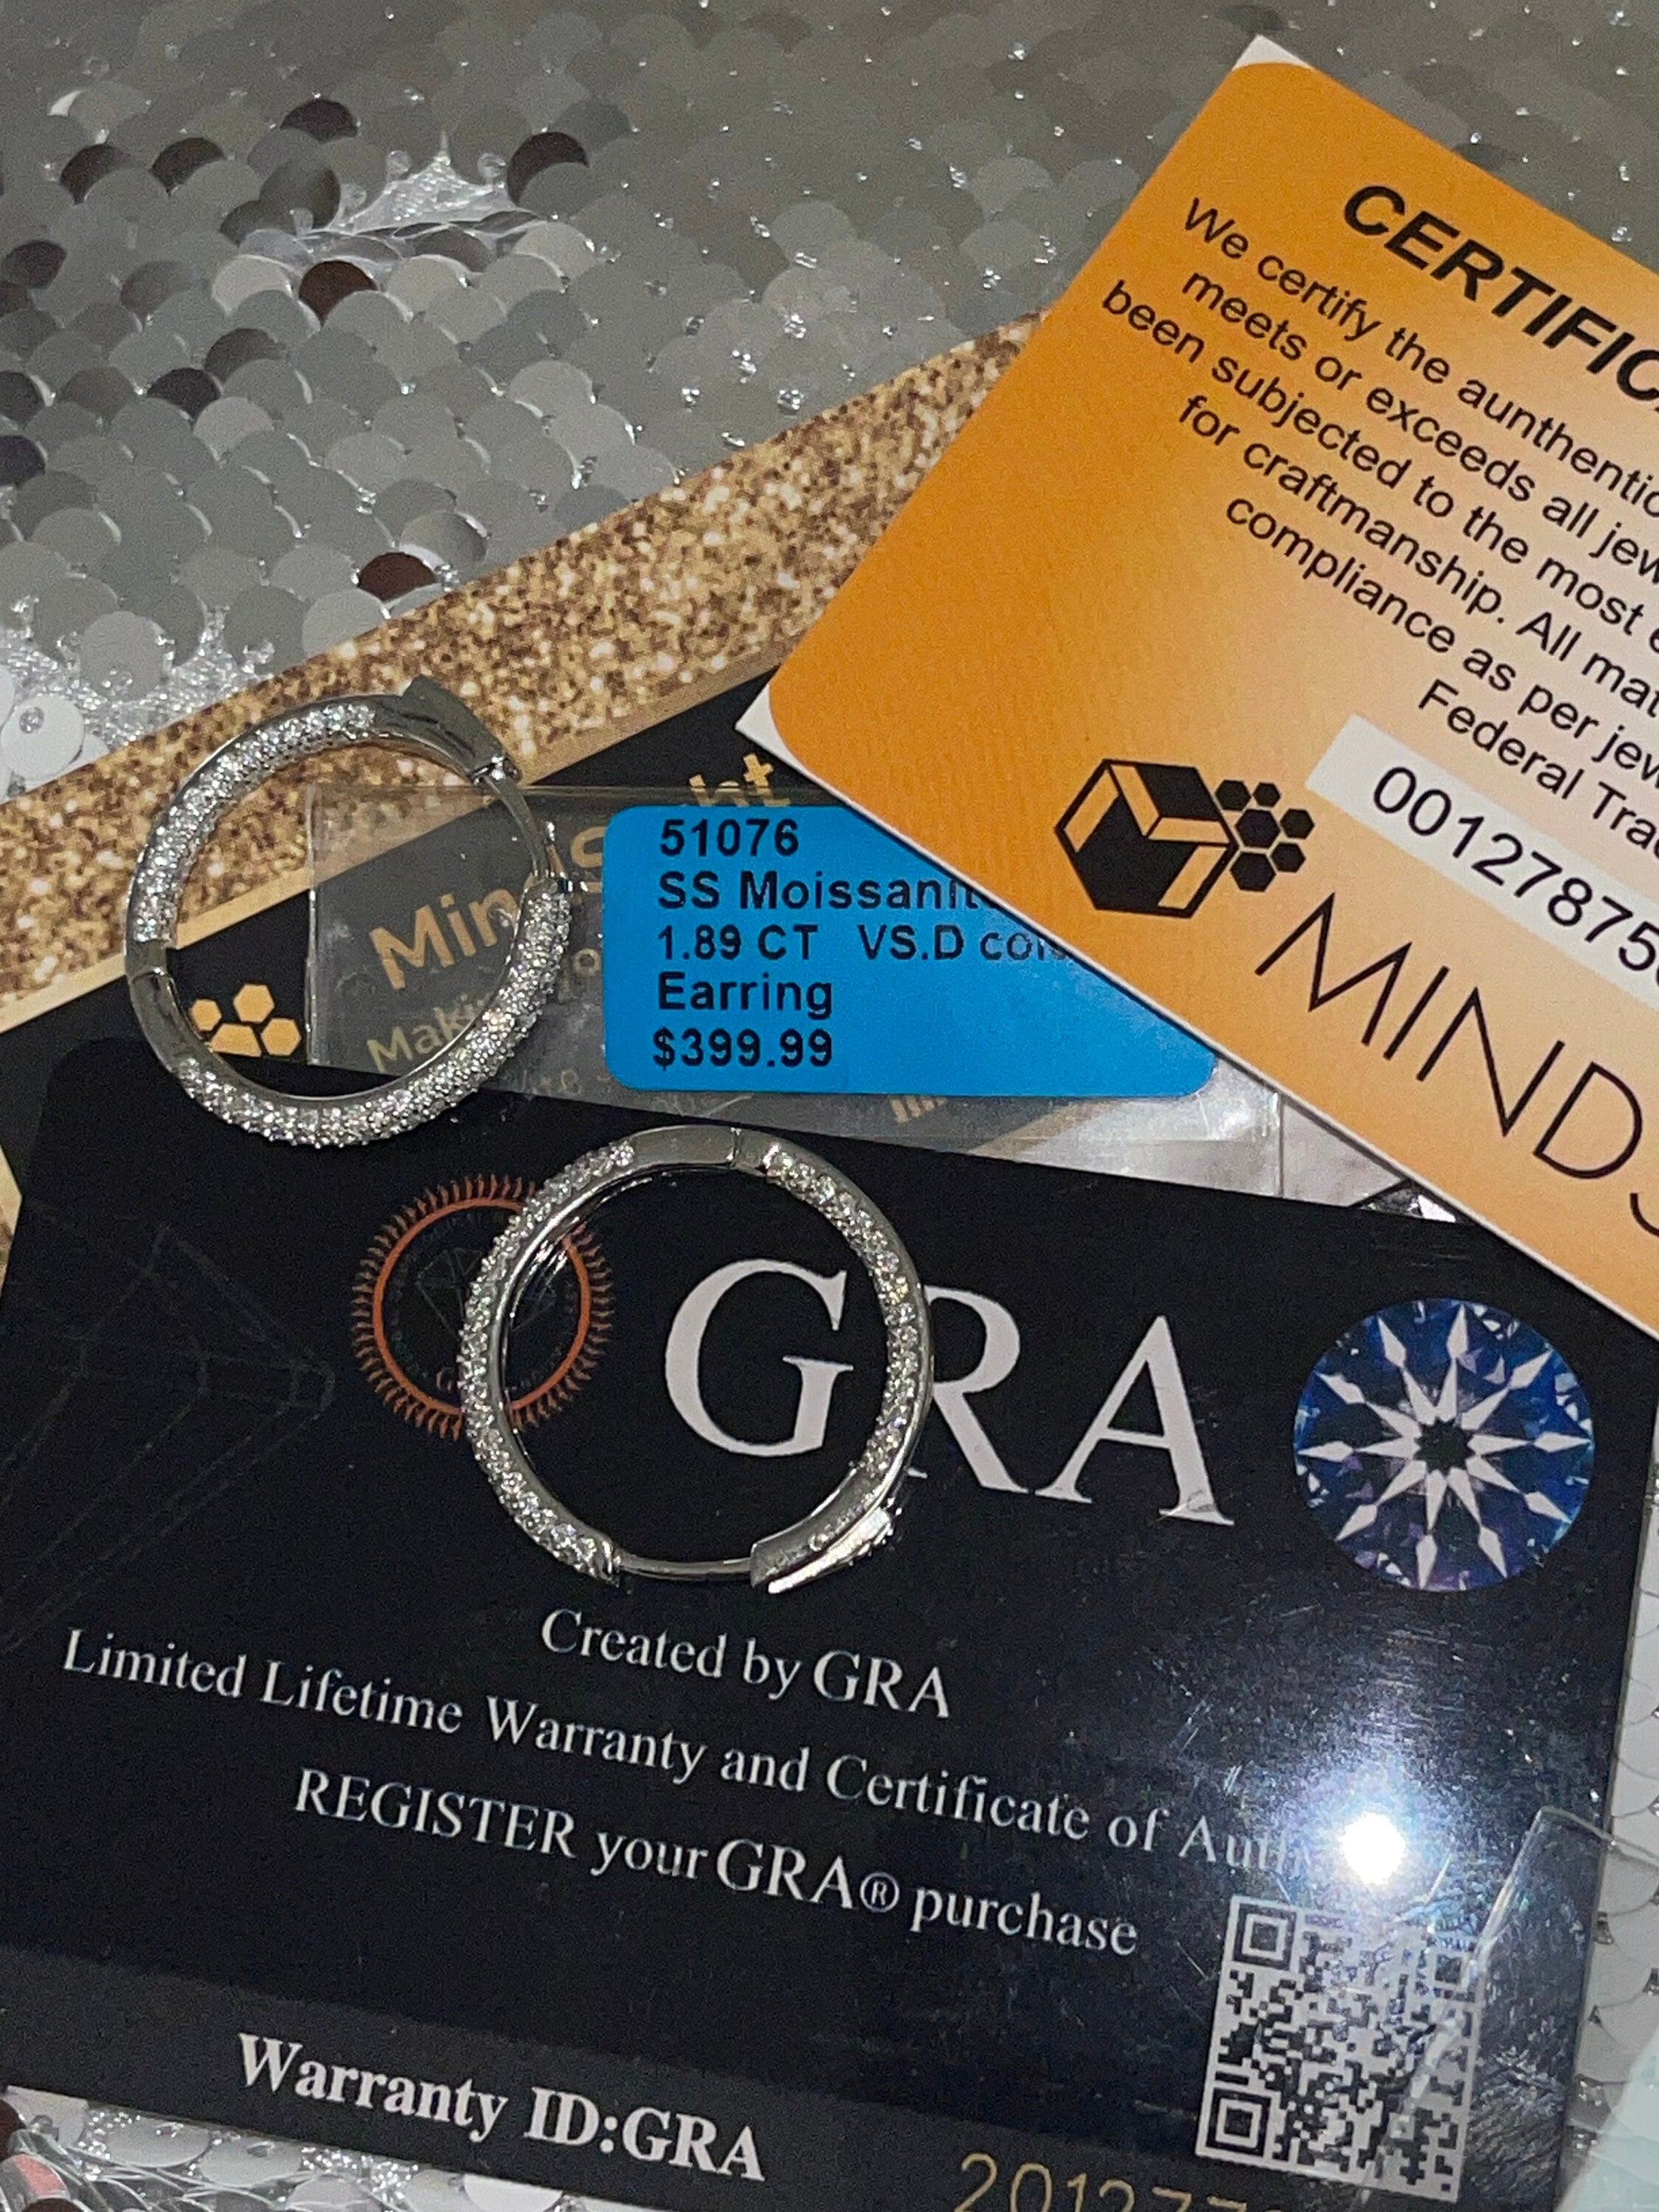 GRA Certified Moissanite Diamond Hoop Earrings - 14k White Gold Vermeil - Stunning VVS Iced Out Elegance - 100% passes diamond testers - HOT